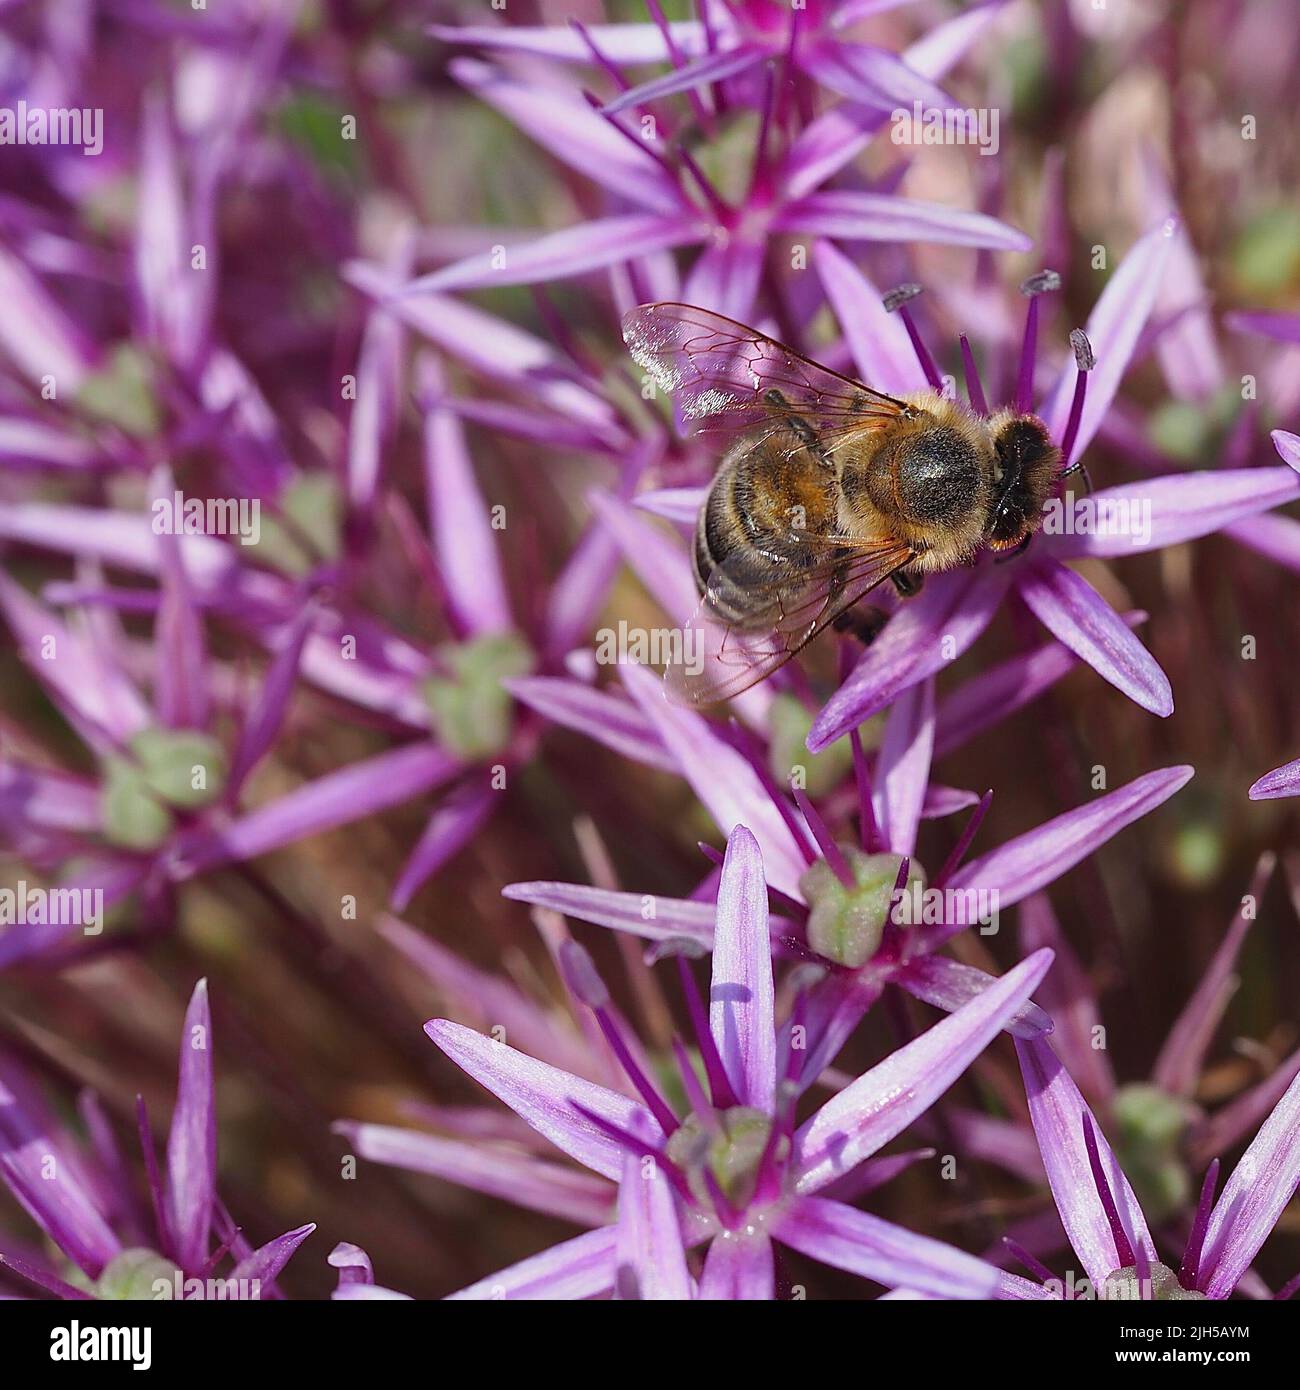 Biene beim Pollensammeln Stock Photo